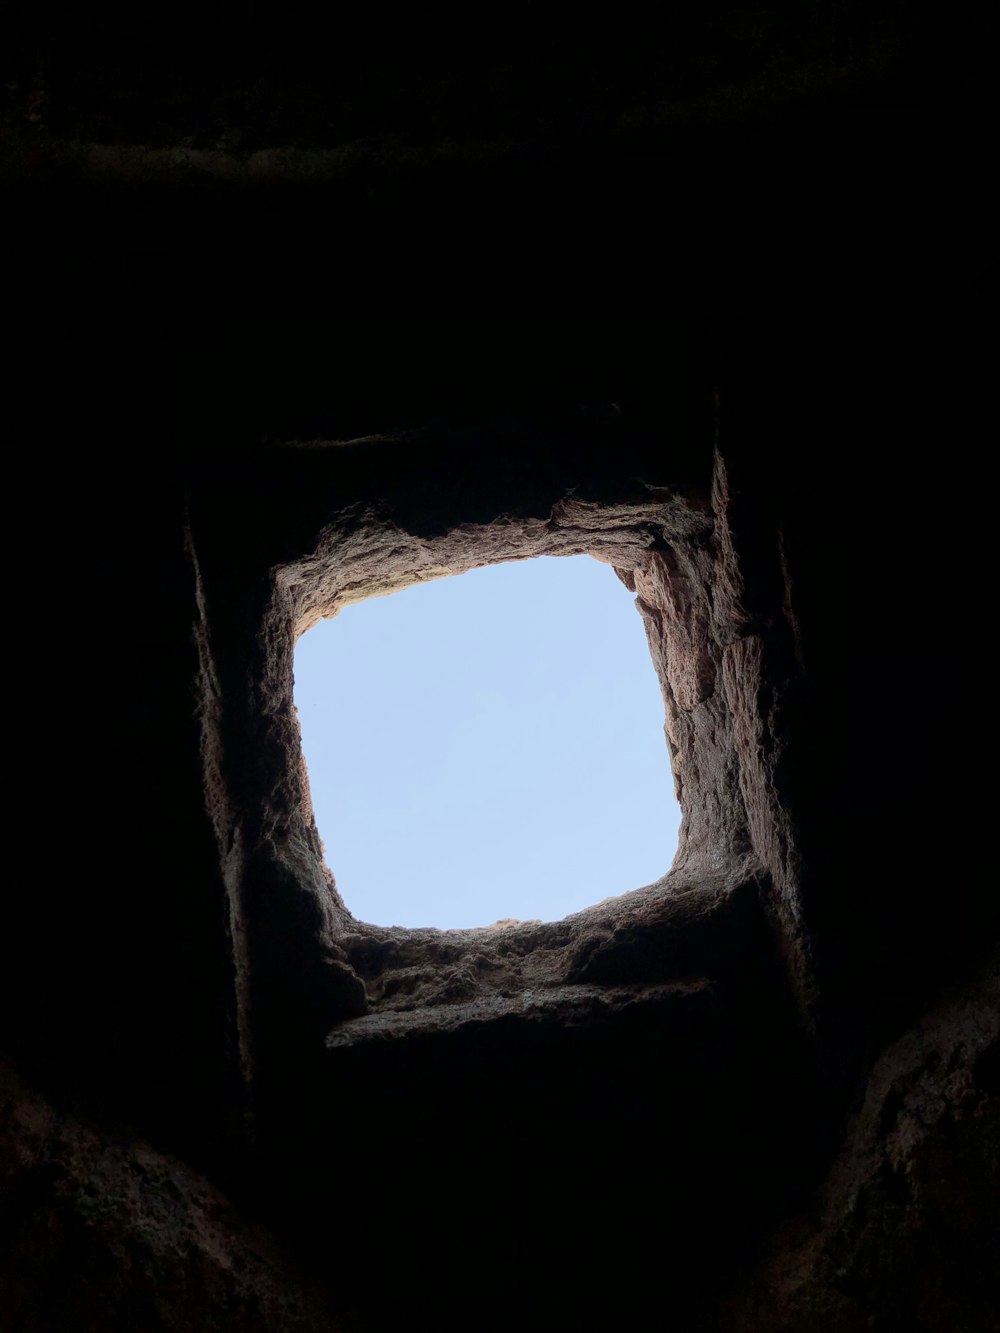 동굴의 창문을 통해 보이는 하늘